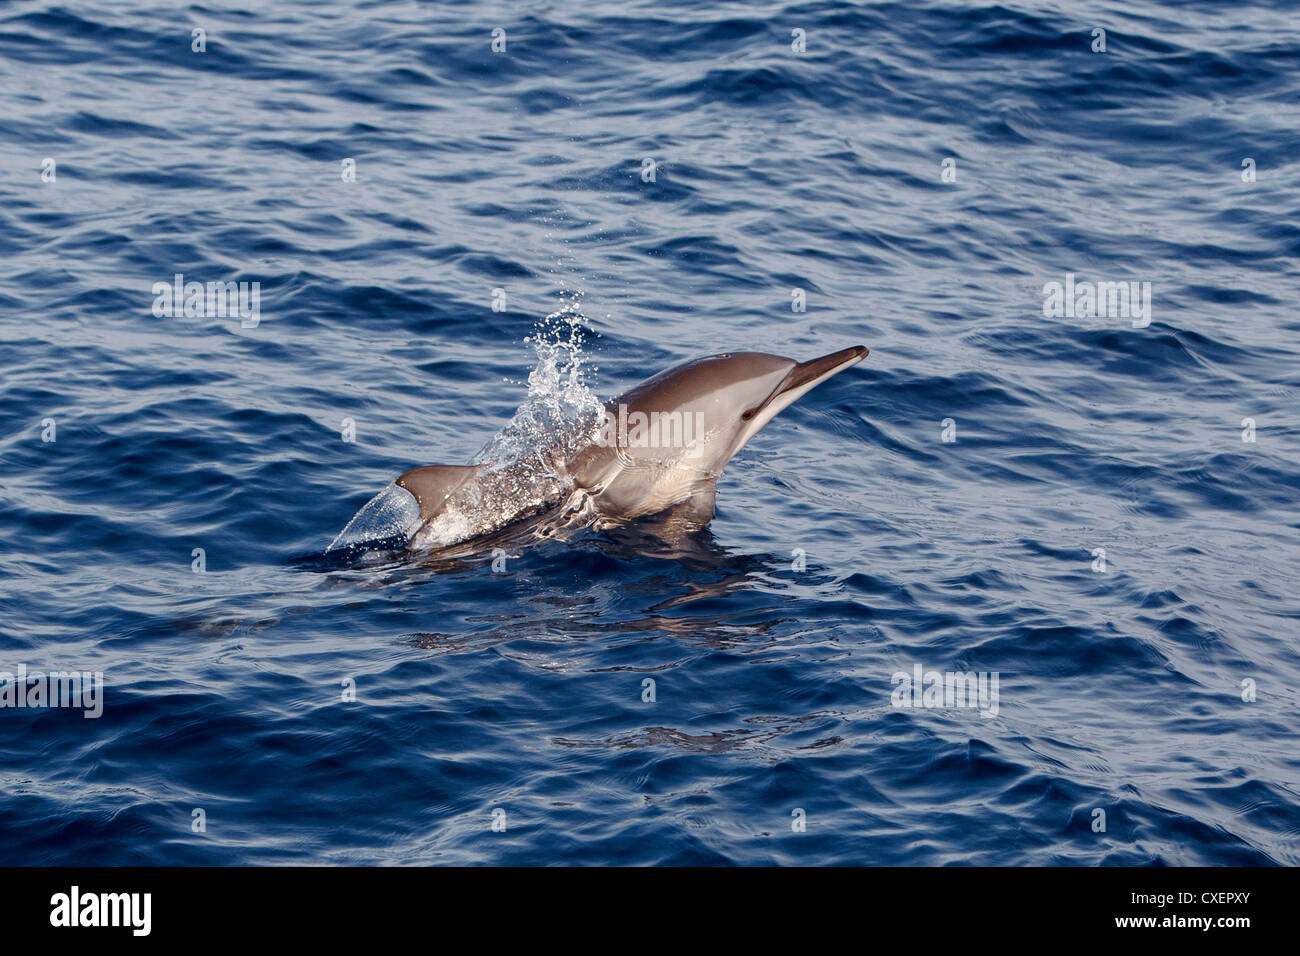 Spinner Dolphin, Stenella longirostris, Ostpazifischer Delfin, sauvage, bondissant, Maldives, océan Indien, Banque D'Images